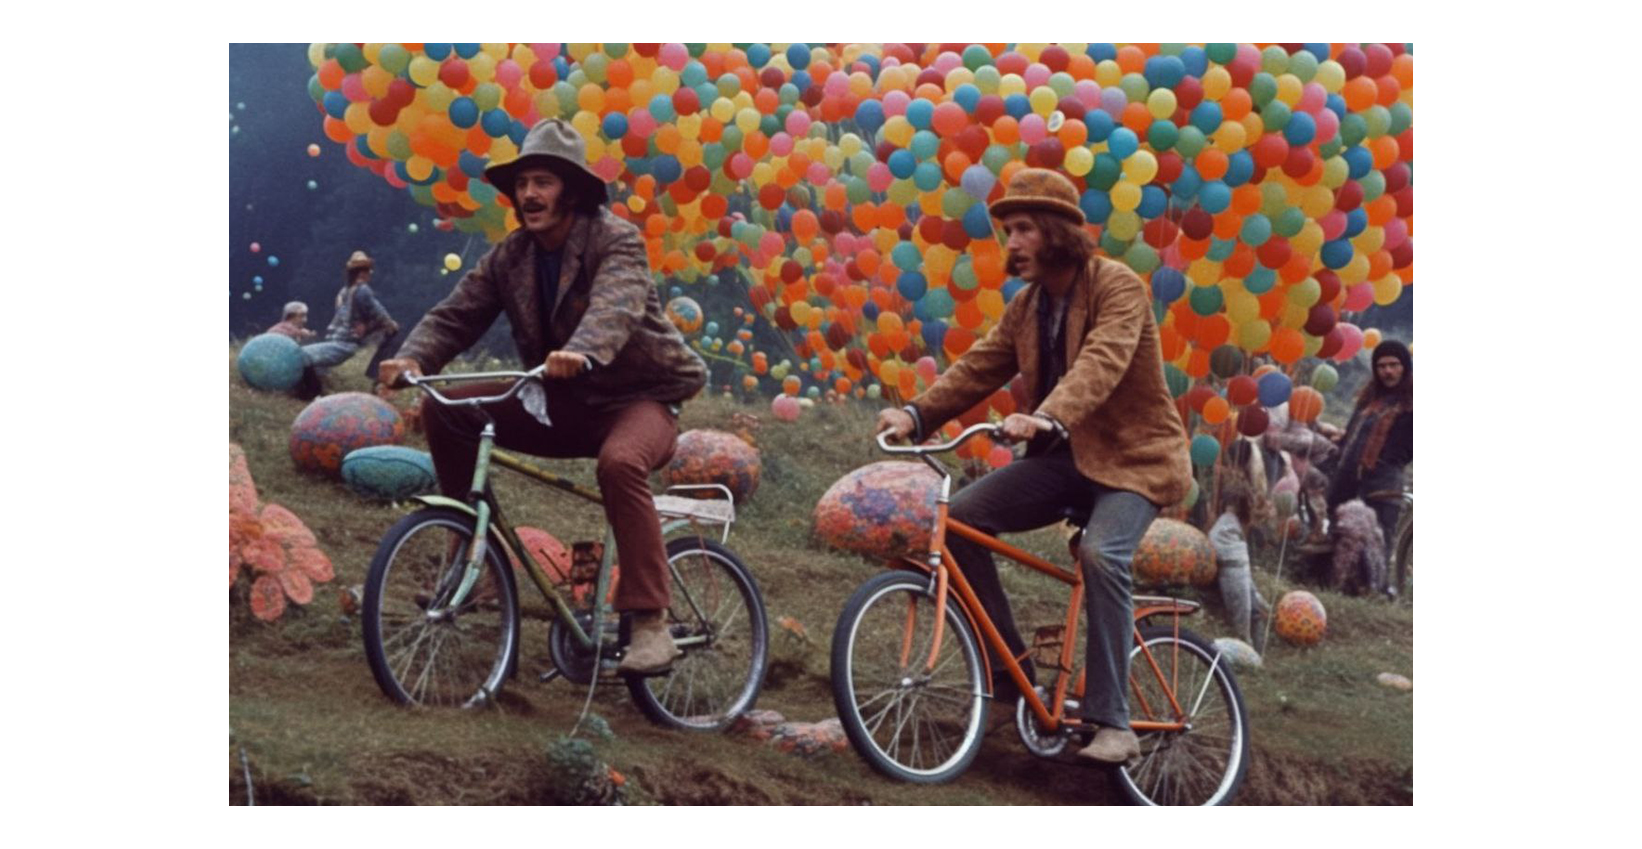 zwei Männer fahren auf einem Fahrrad auf einem Fest mit vielen Luftballons im Hintergrund